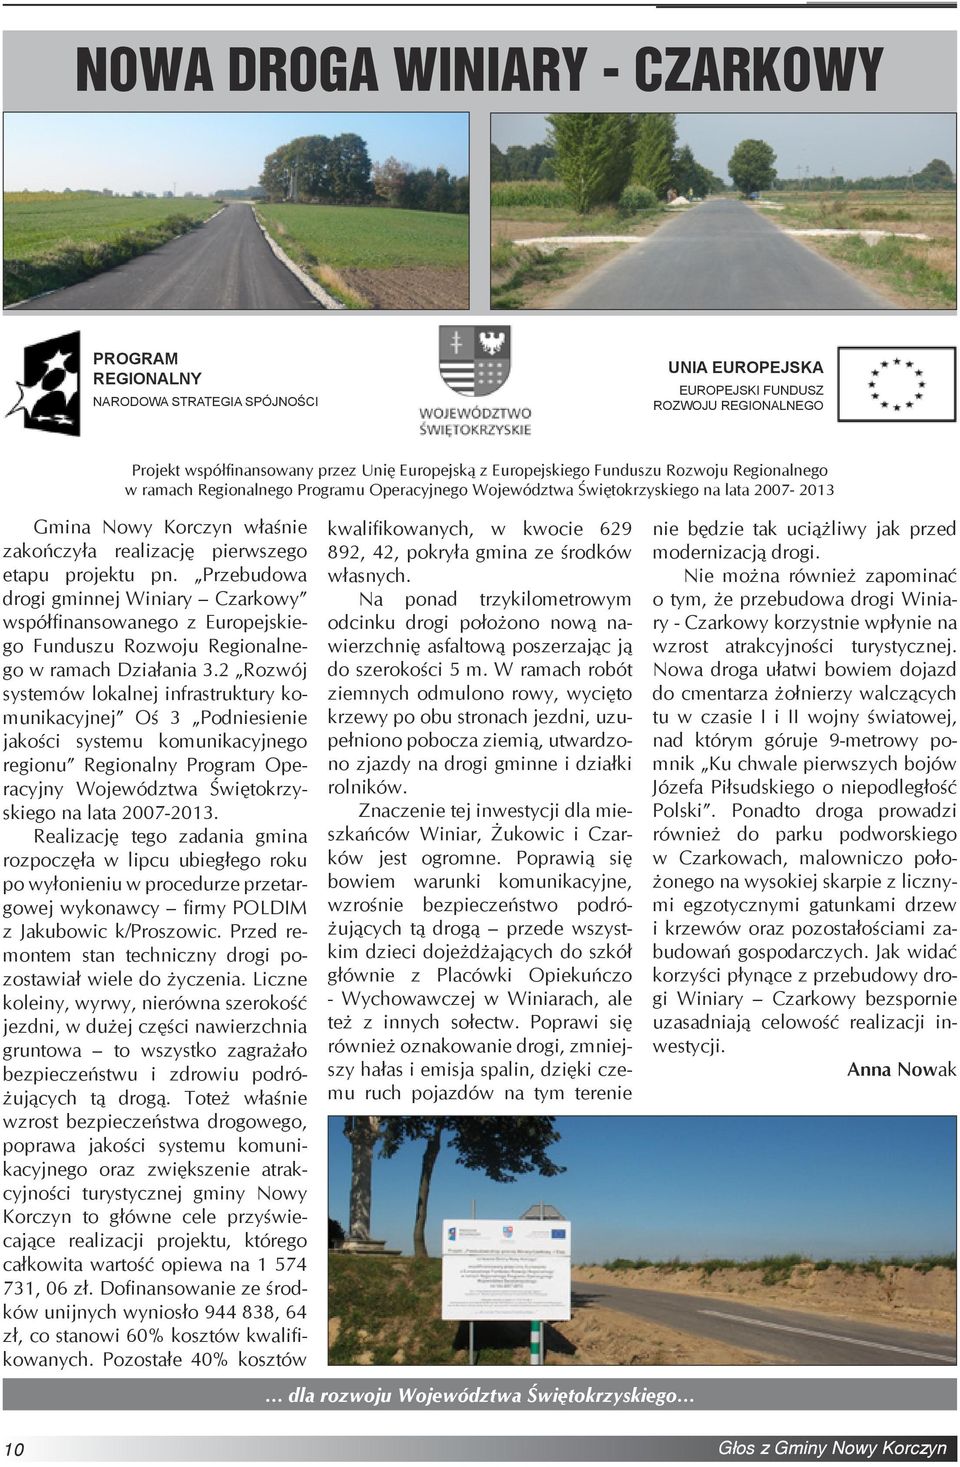 Przebudowa drogi gminnej Winiary Czarkowy współfinansowanego z Europejskiego Funduszu Rozwoju Regionalnego w ramach Działania 3.